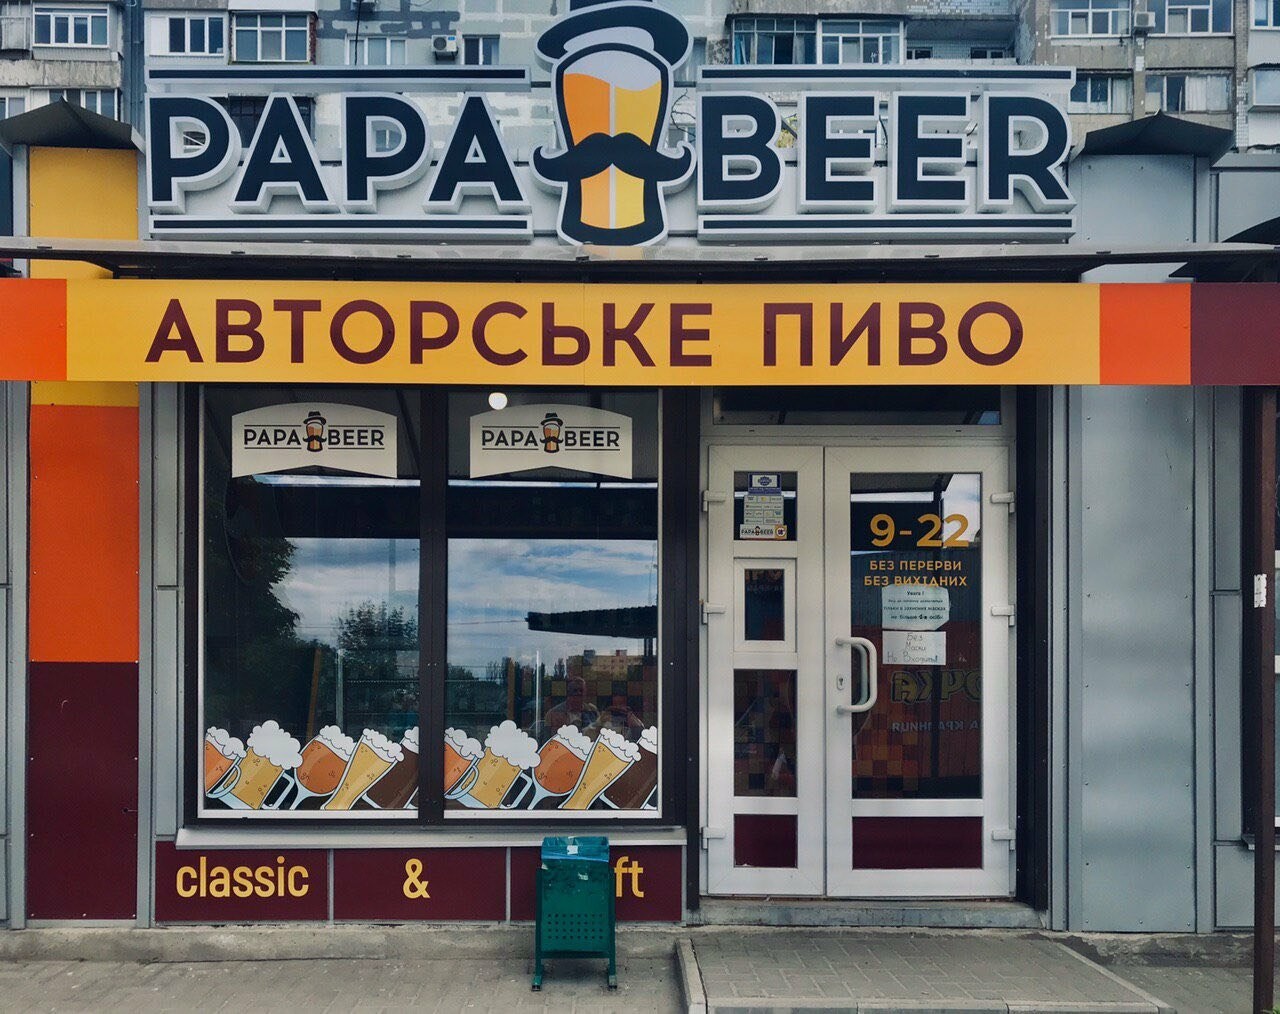 Выпить и купить настоящее живое пиво в Запорожье  можно в сети магазинов ТМ "PapaBeer":, фото-4